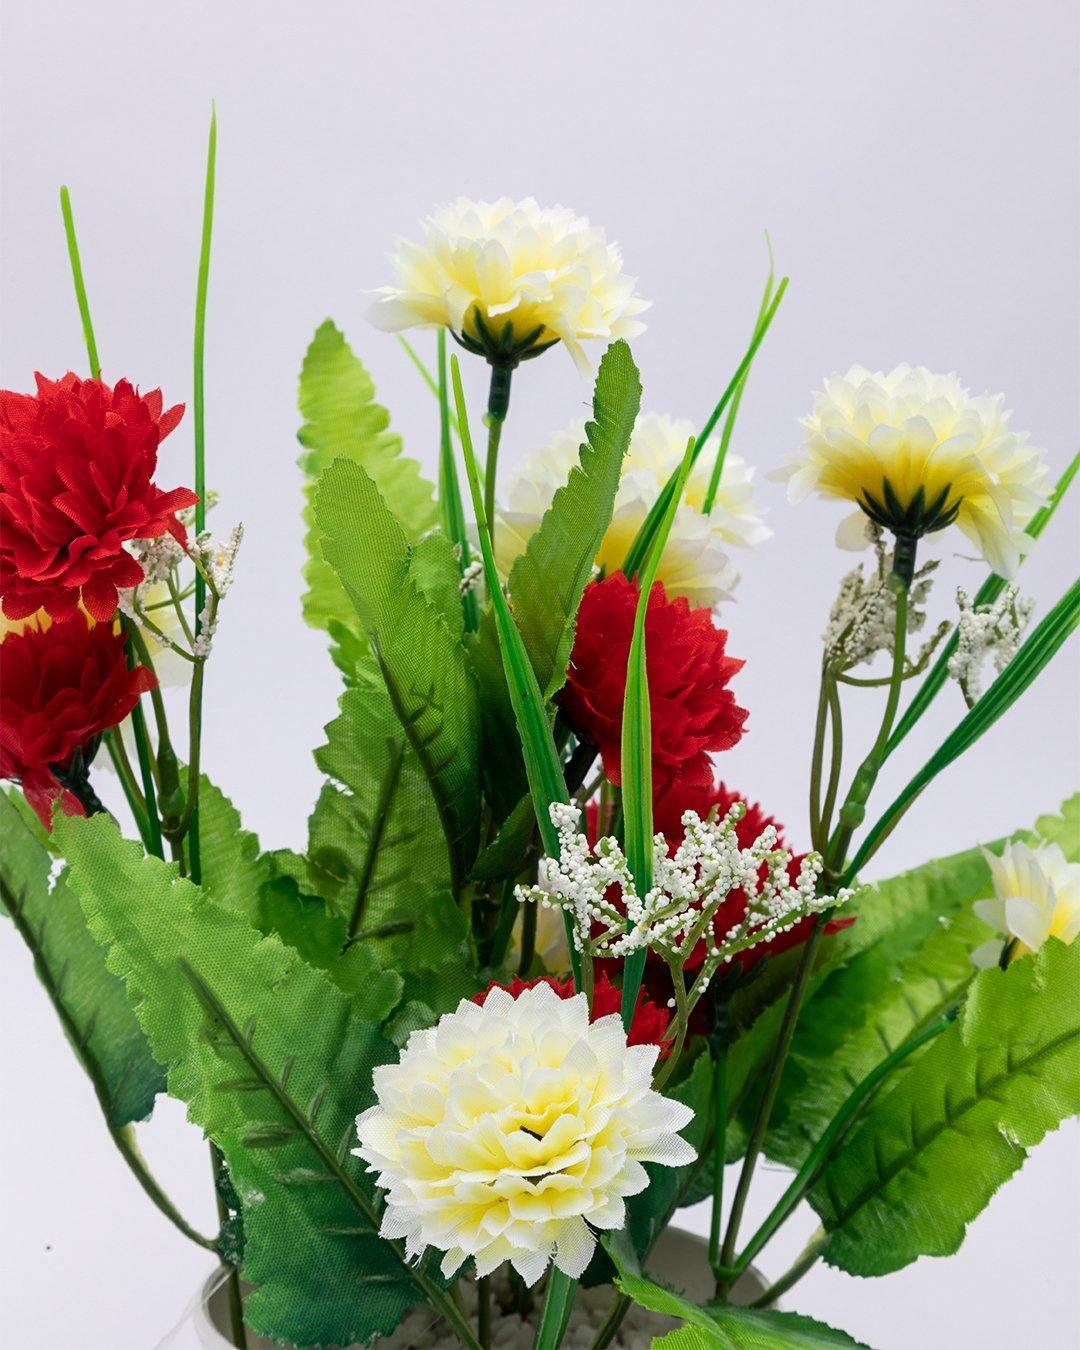 Artificial Plant with White Pot, Carnation Flowers Arrangement, Red, Plastic Plant - MARKET 99